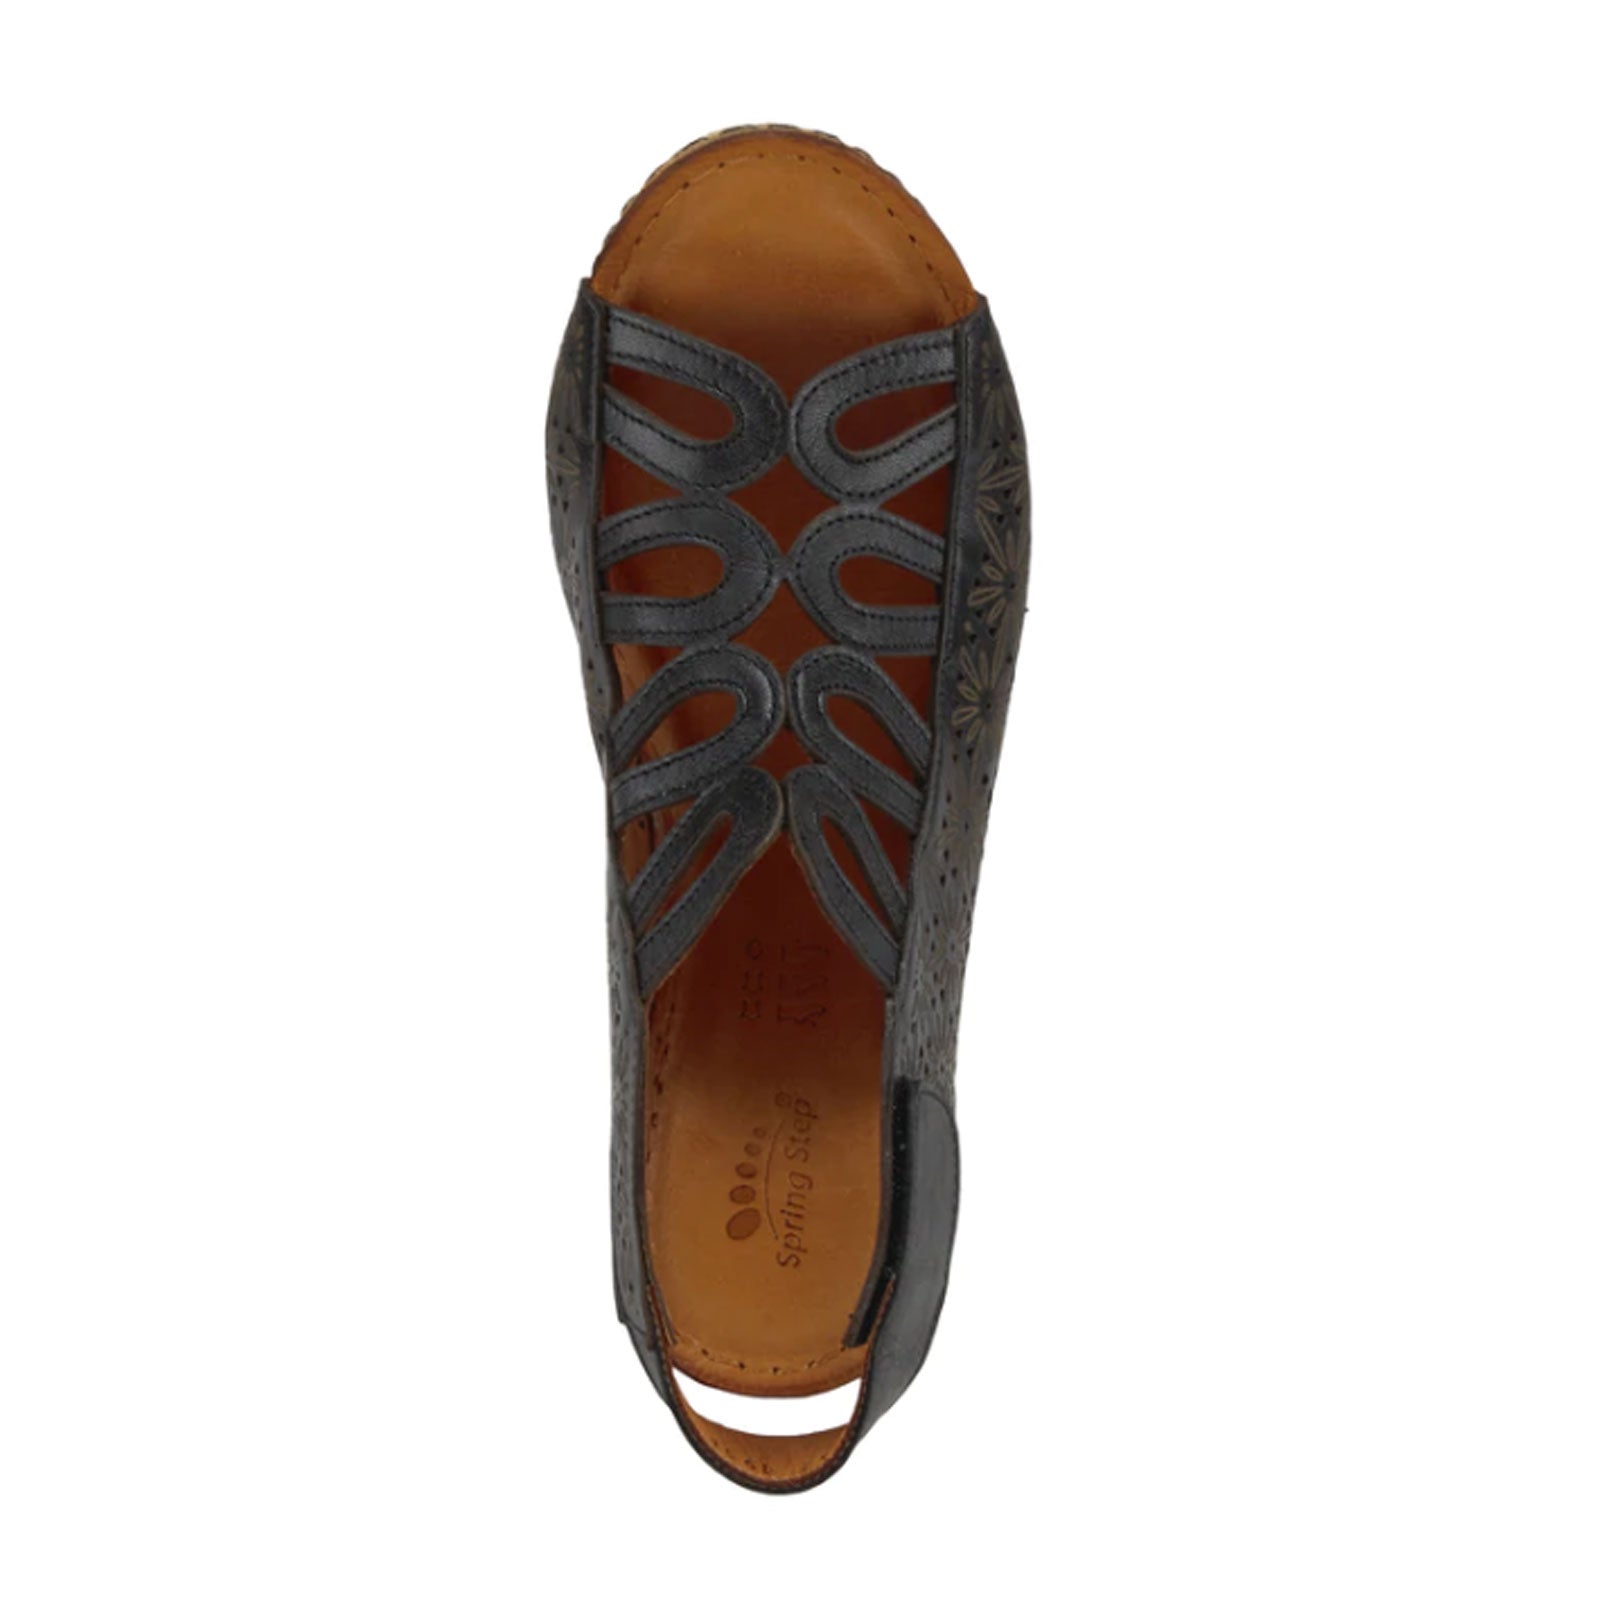 Spring Step Inocencia Wedge Sandal (Women) - Black Sandals - Wedge - The Heel Shoe Fitters